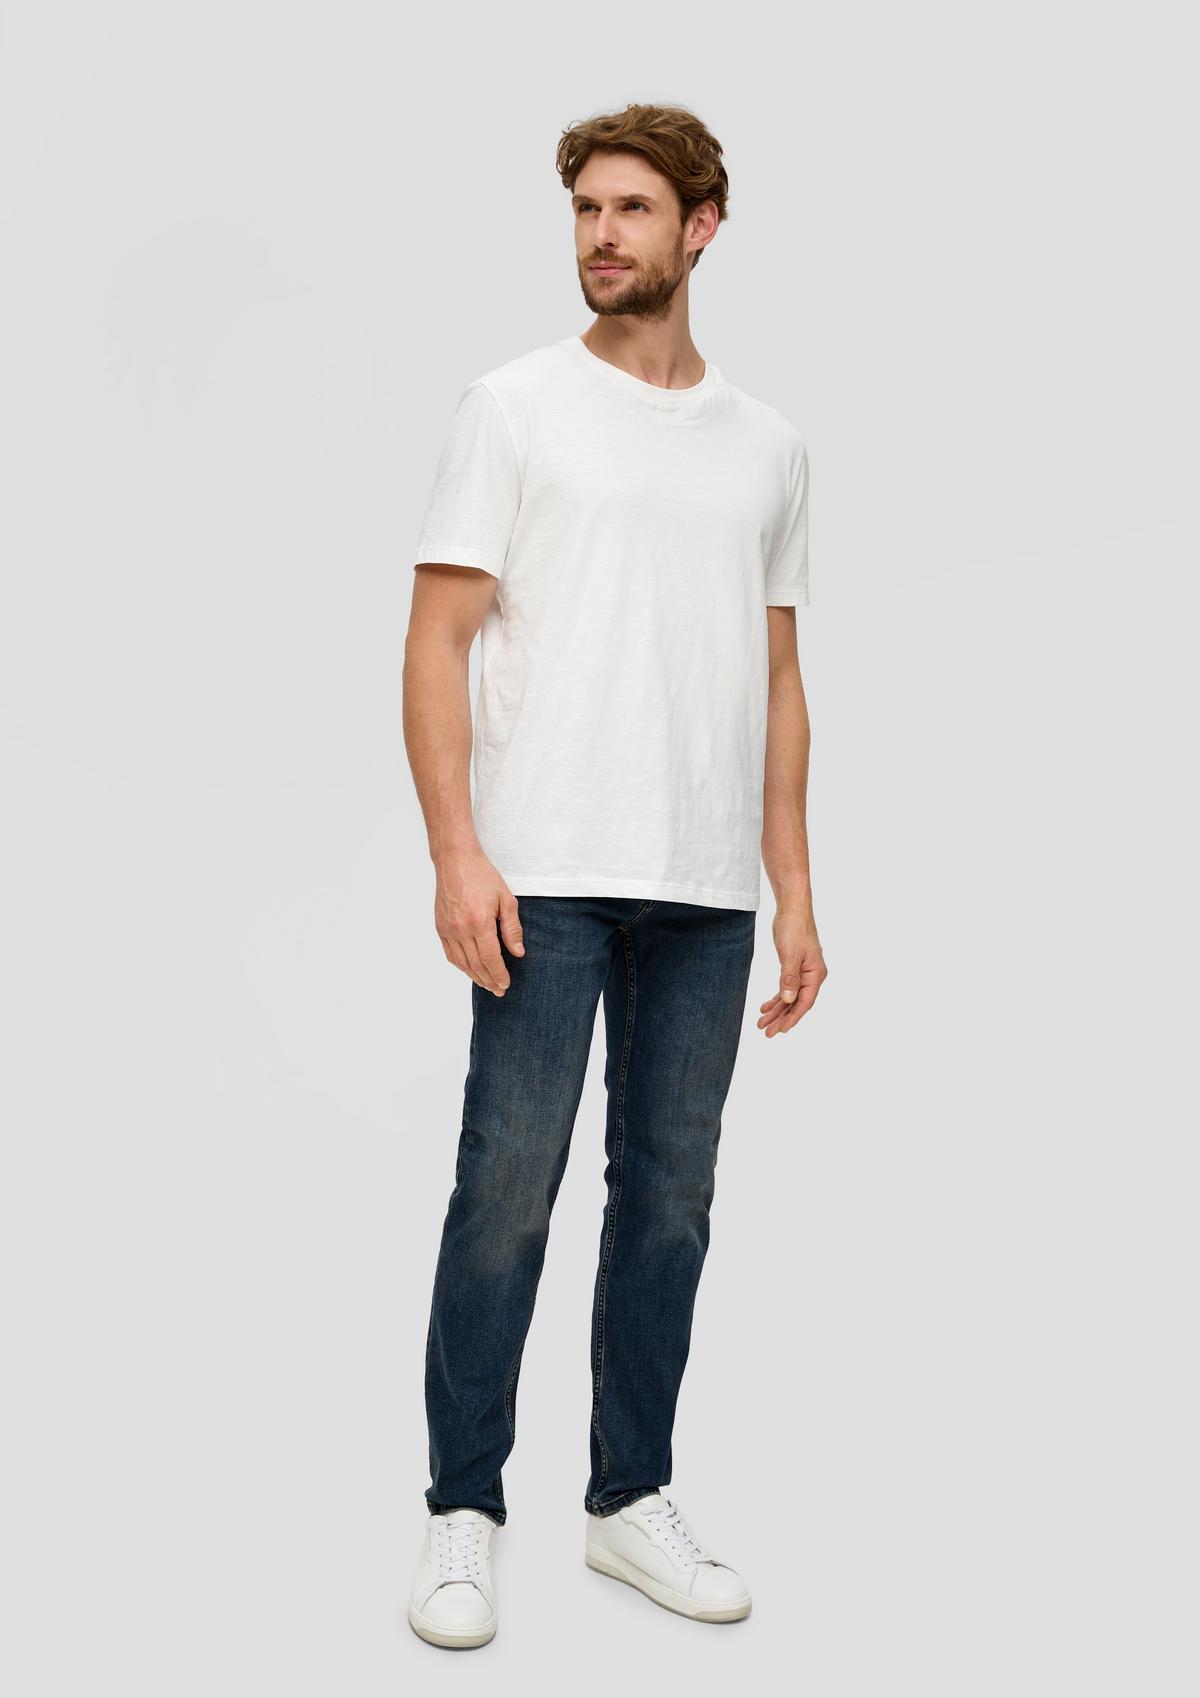 Jeans Nelio / slim fit / mid rise / slim leg